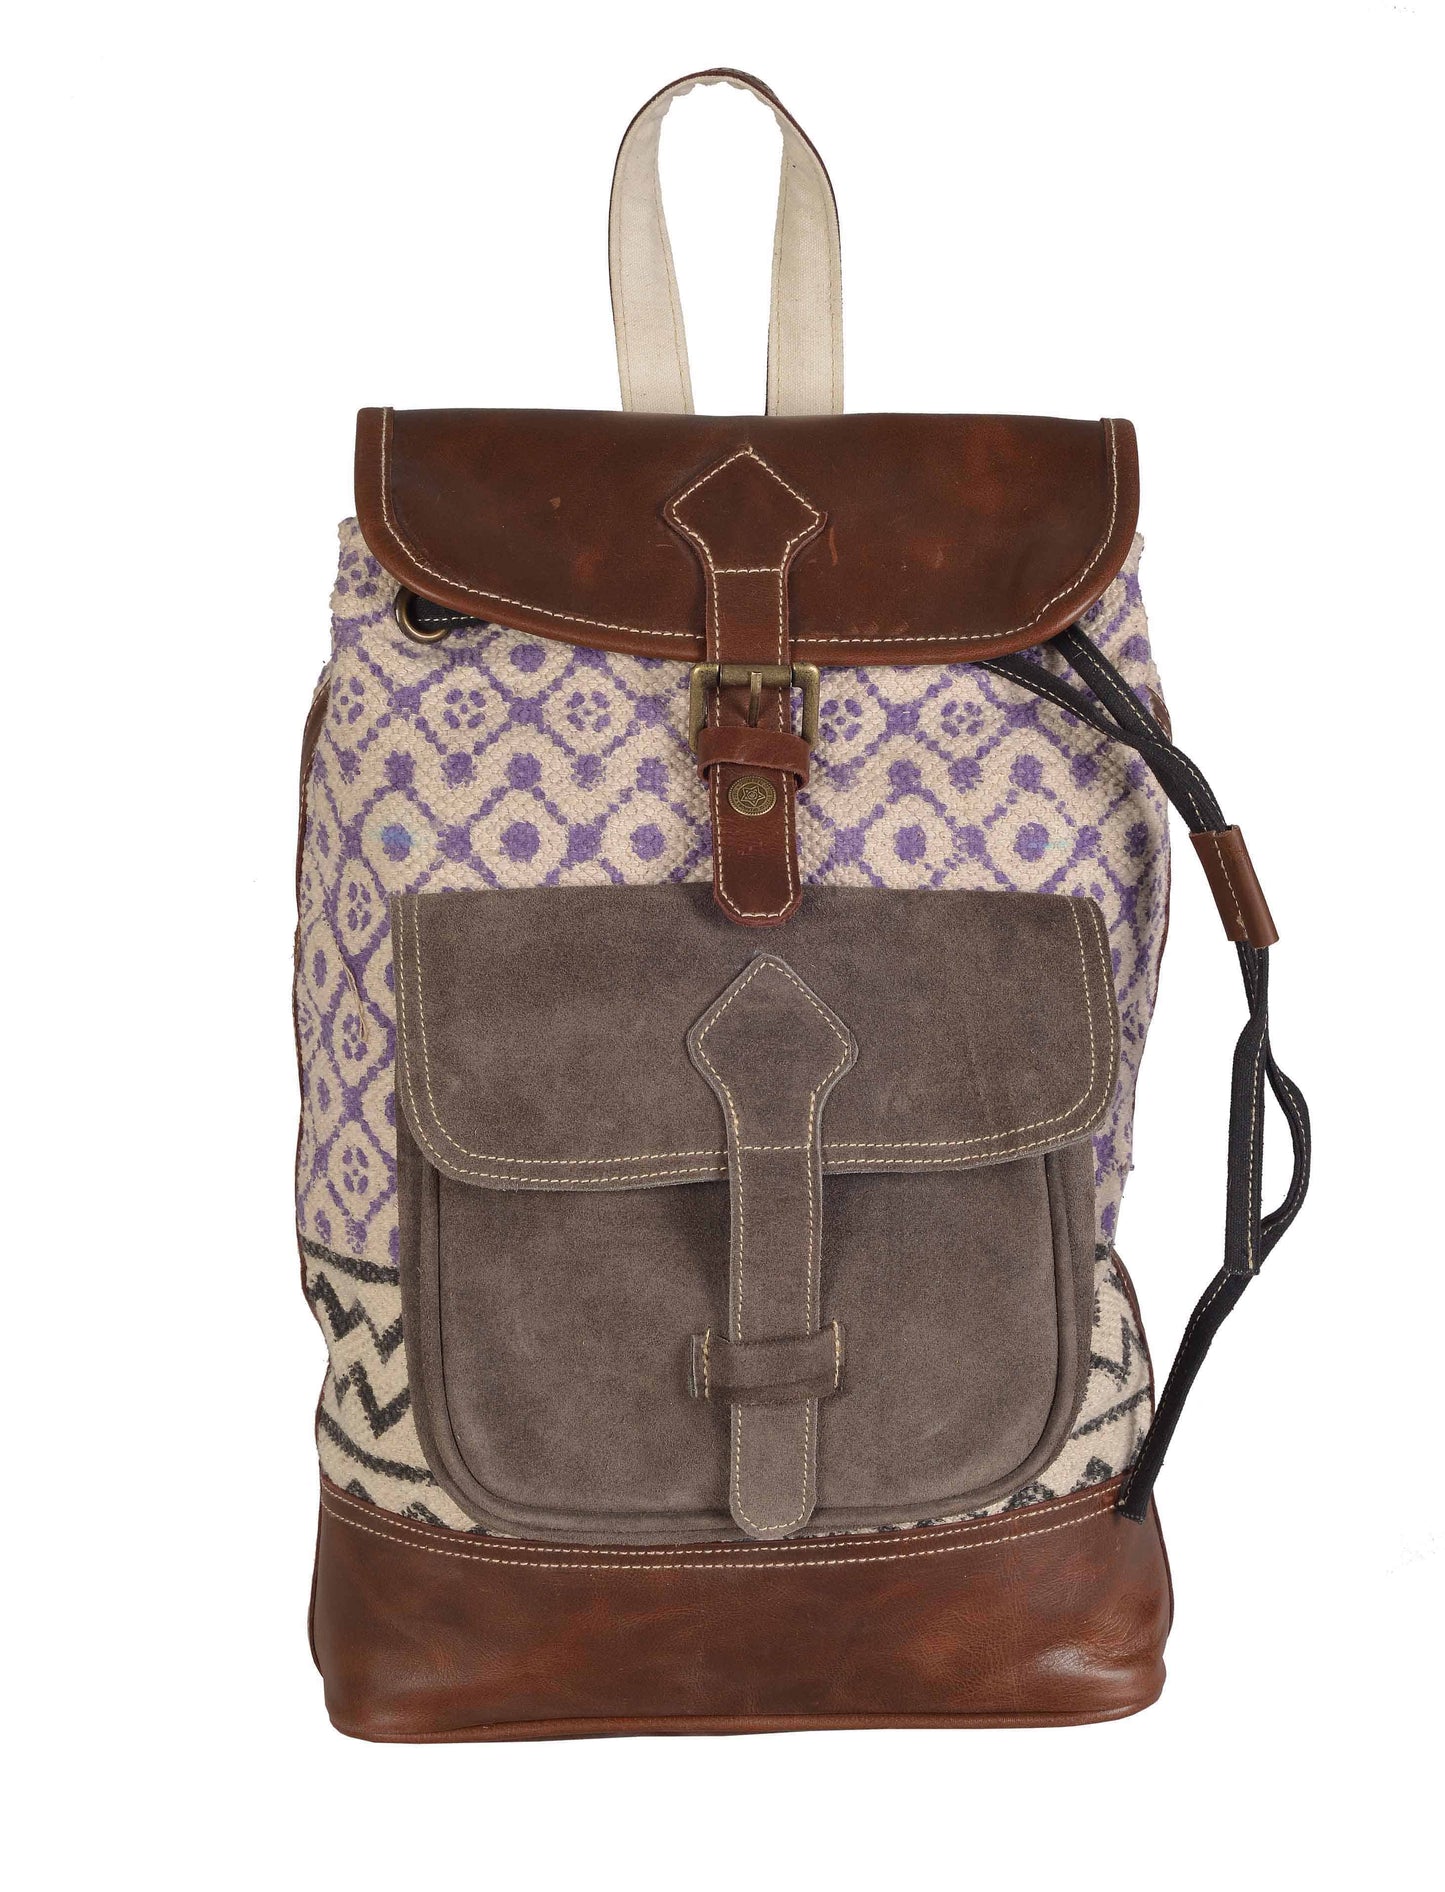 Lovely Lavender Backpack